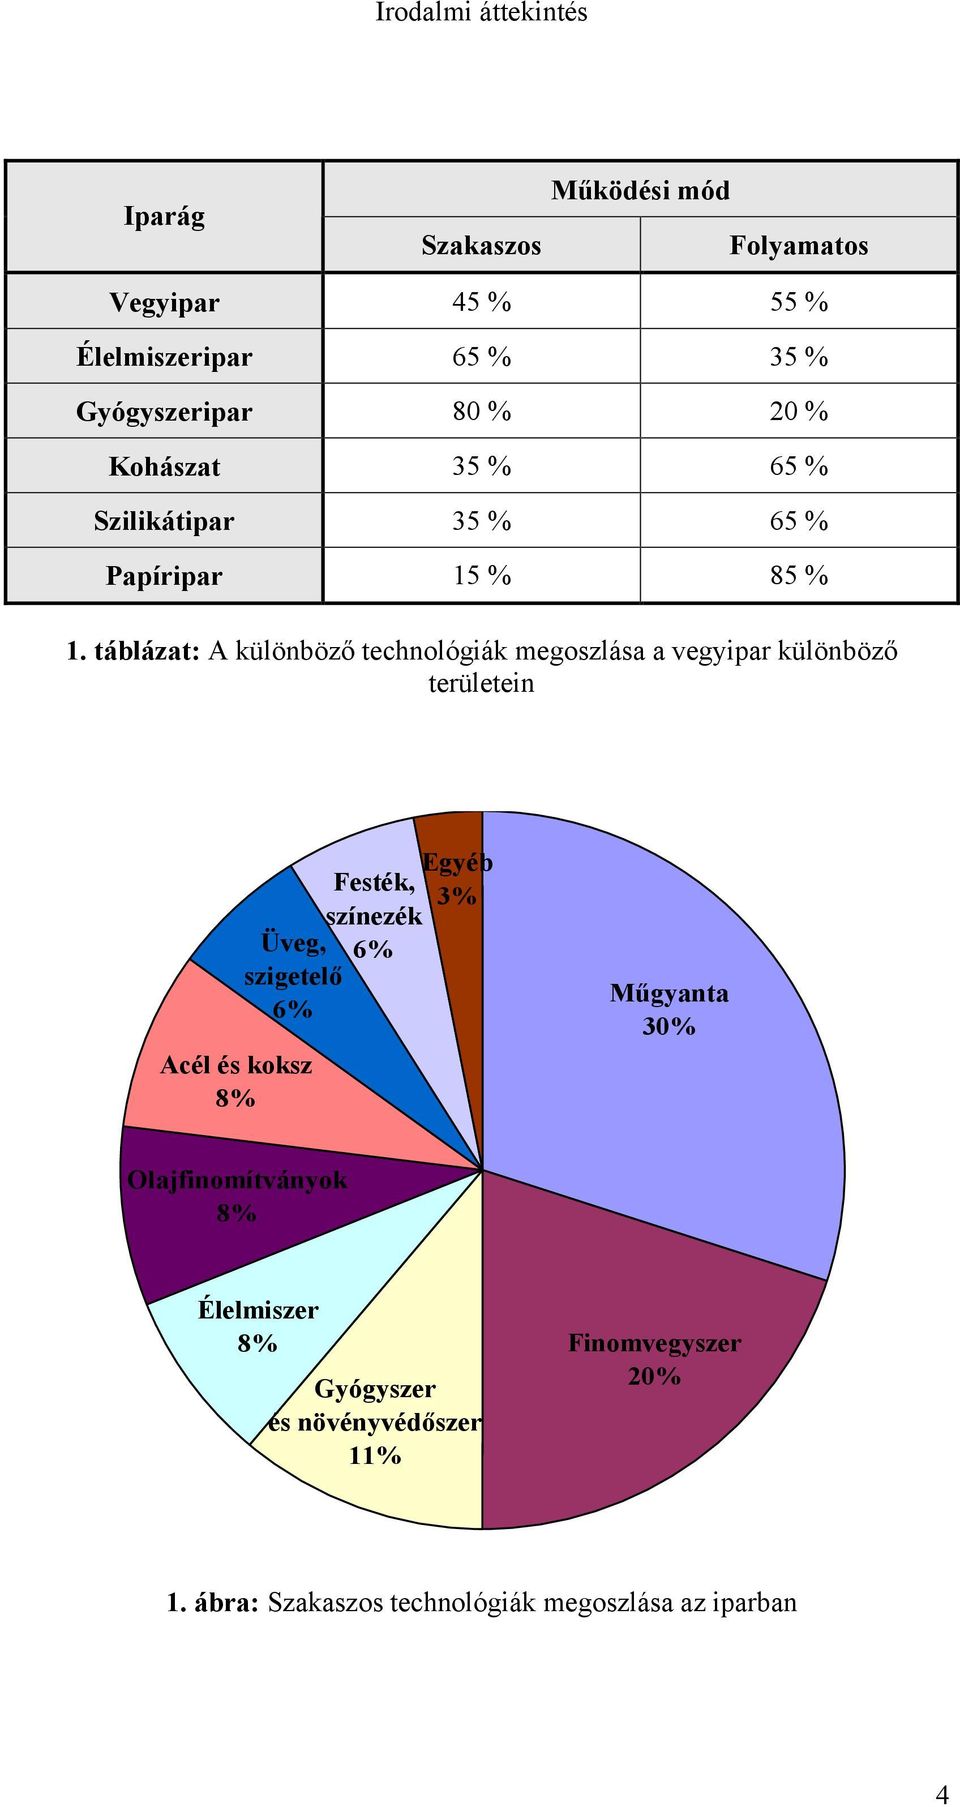 táblázat: A különböző technológiák megoszlása a vegyipar különböző területein Egyéb Festék, 3% színezék Üveg, 6% szigetelő